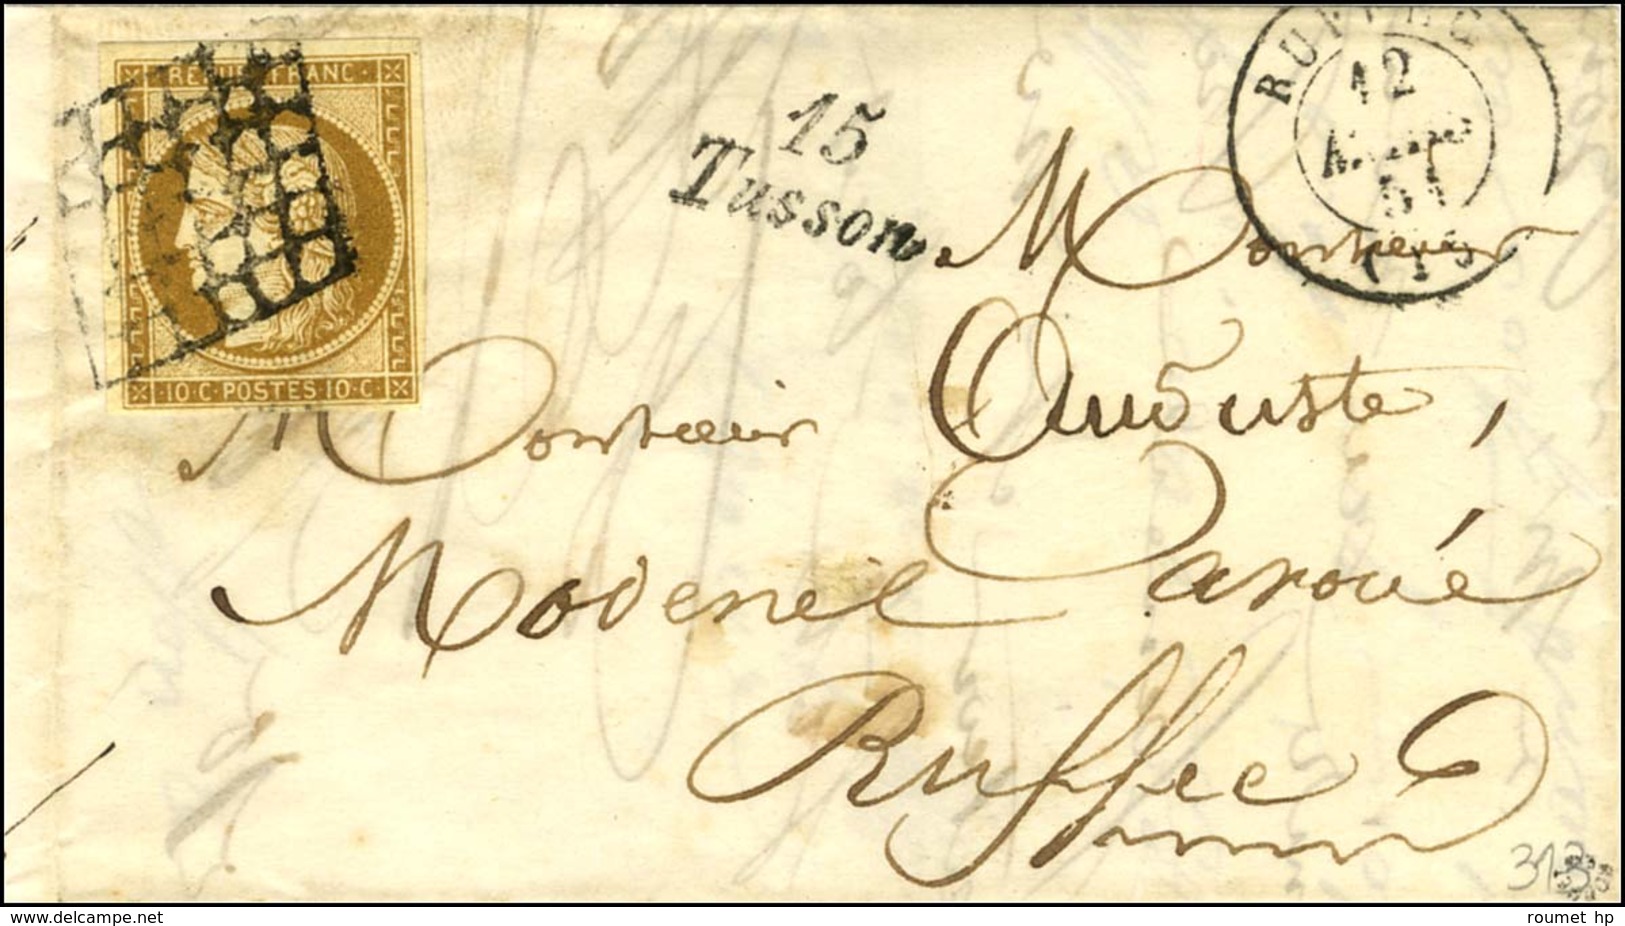 Grille Spéciale '' à Alvéoles '' / N° 1 Càd T 15 RUFFEC (15) Cursive 15 / Tusson Sur Lettre Locale. 1851. - SUP. - RR. - 1849-1850 Cérès